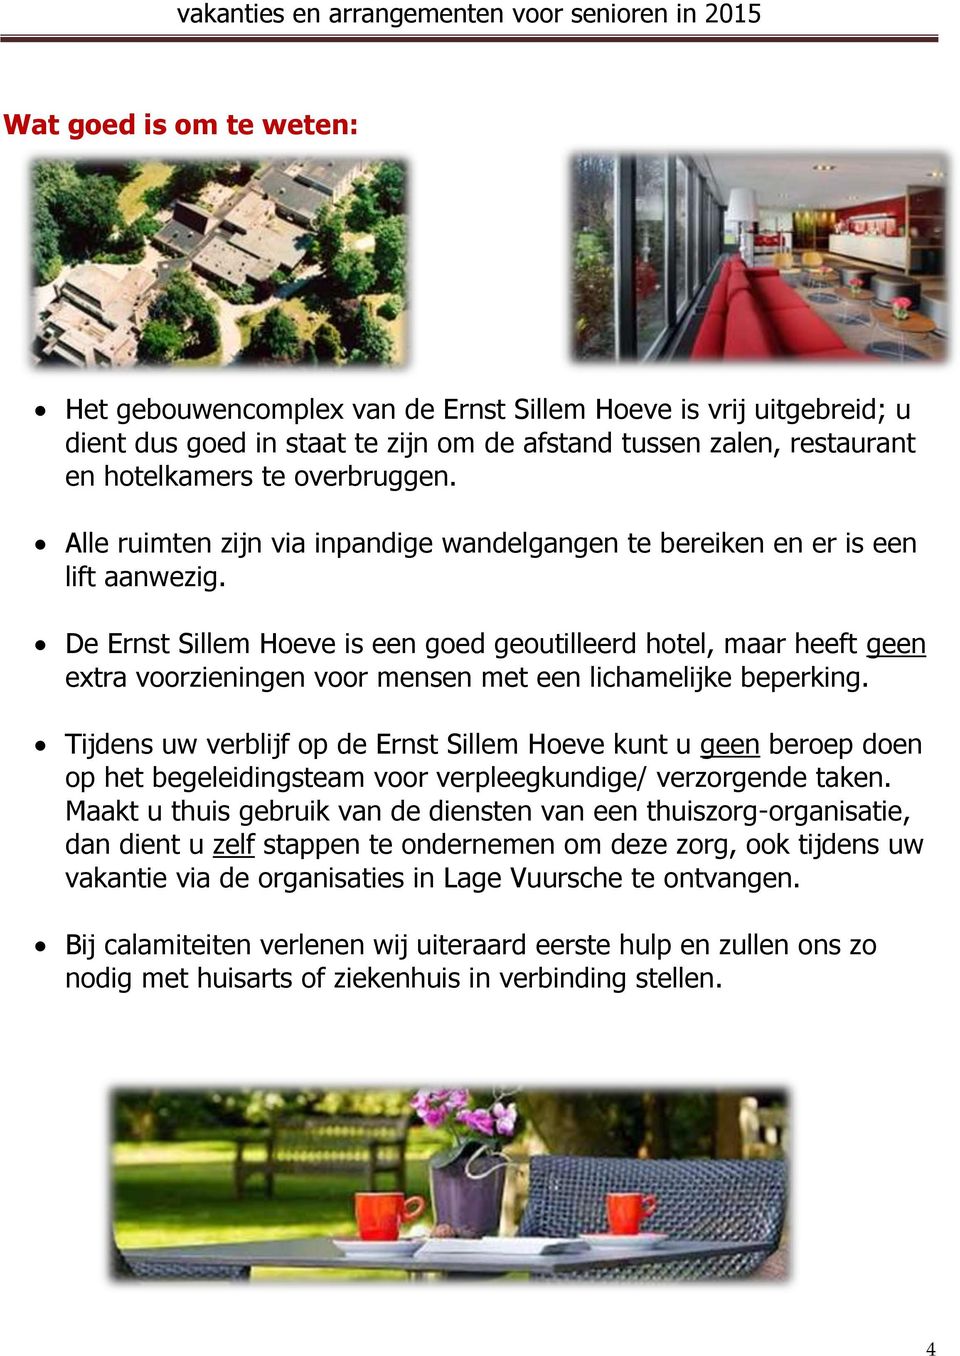 De Ernst Sillem Hoeve is een goed geoutilleerd hotel, maar heeft geen extra voorzieningen voor mensen met een lichamelijke beperking.